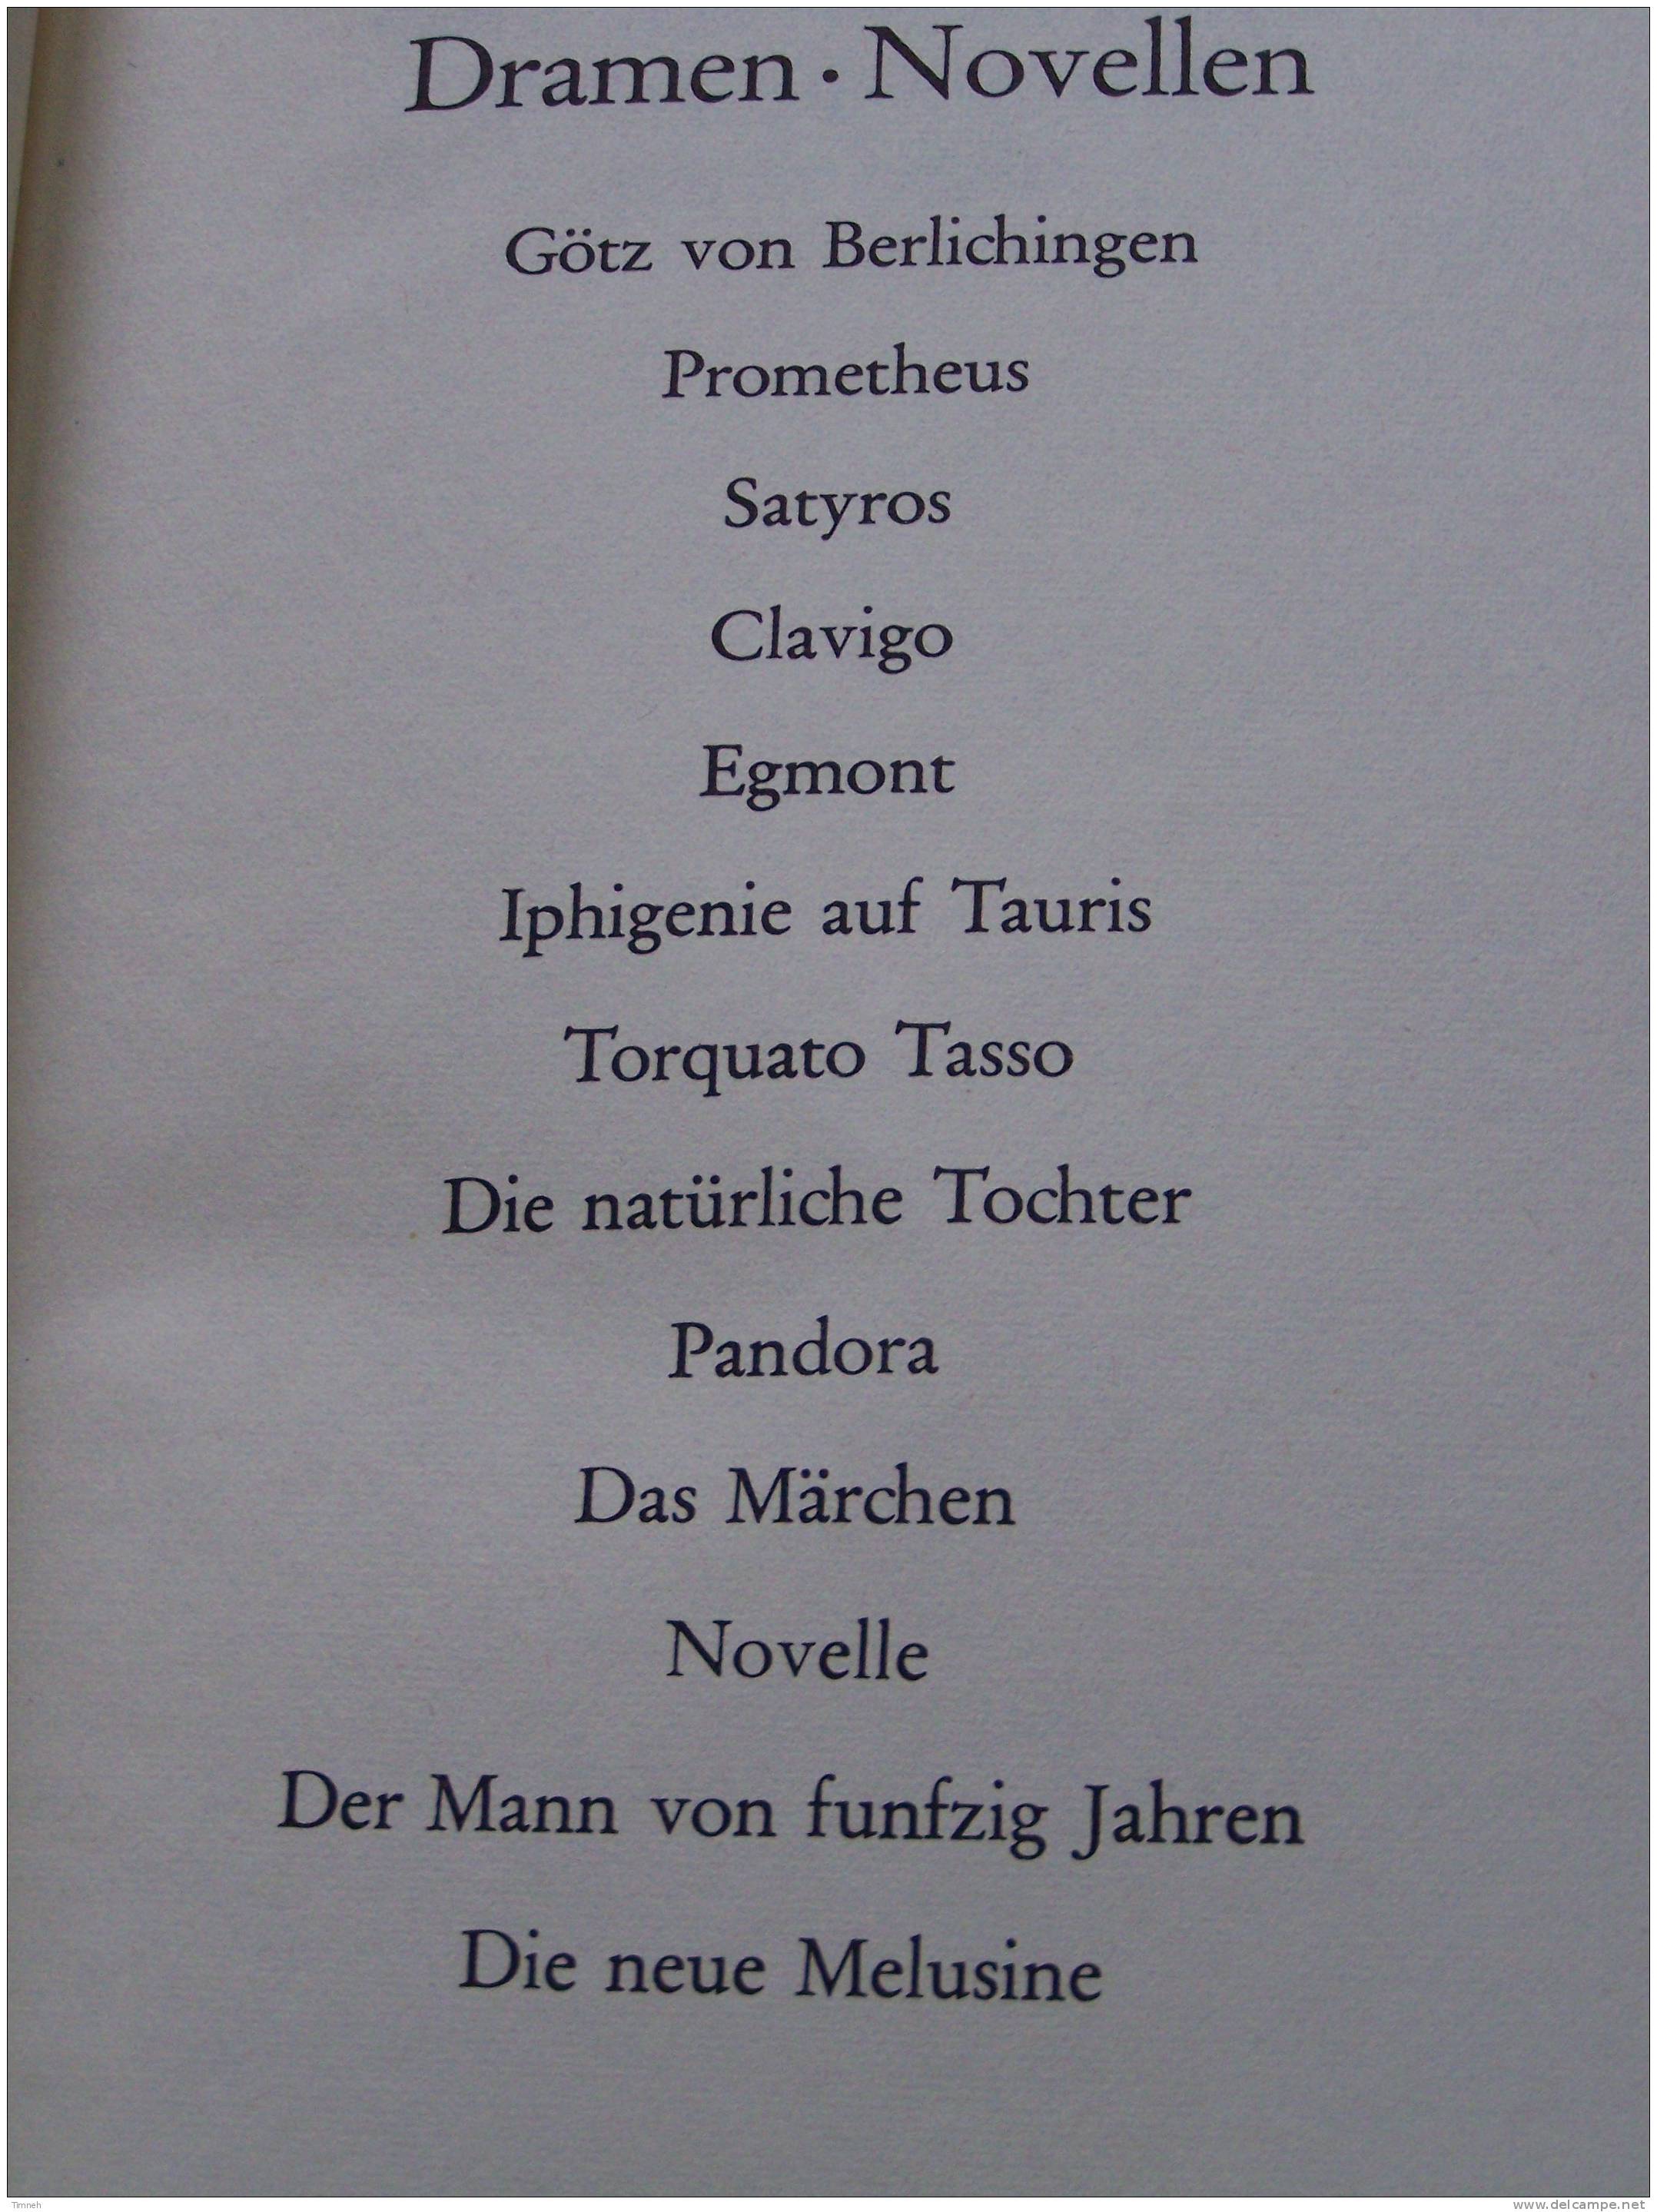 GOETHE WERKE - 6 BANDEN TOMES - Insel Verlag 1965 - WERTHER MEISTER FAUST GEDICHTE DICHTUNG WARHEIT - Internationale Autoren